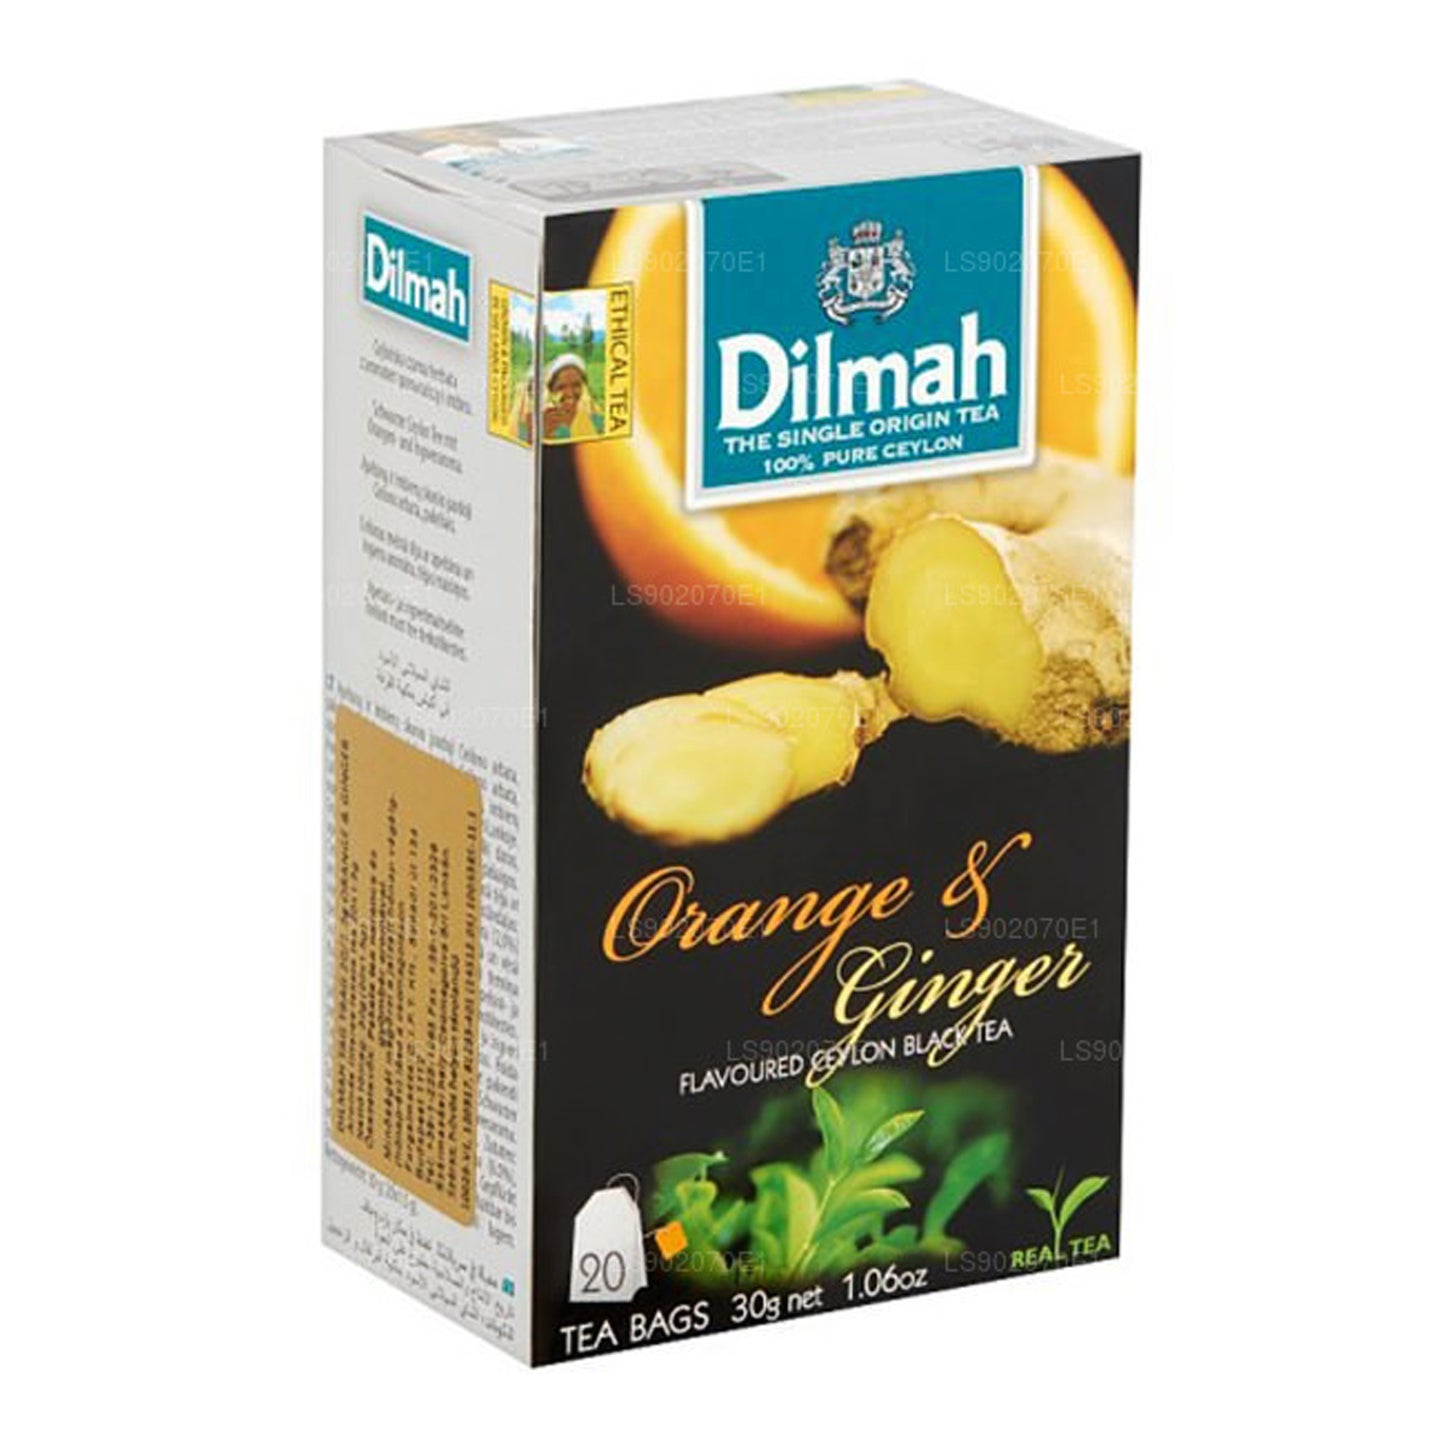 Dilmah Portakal ve Zencefil Aromalı Çay (30g) 20 Çay Poşeti